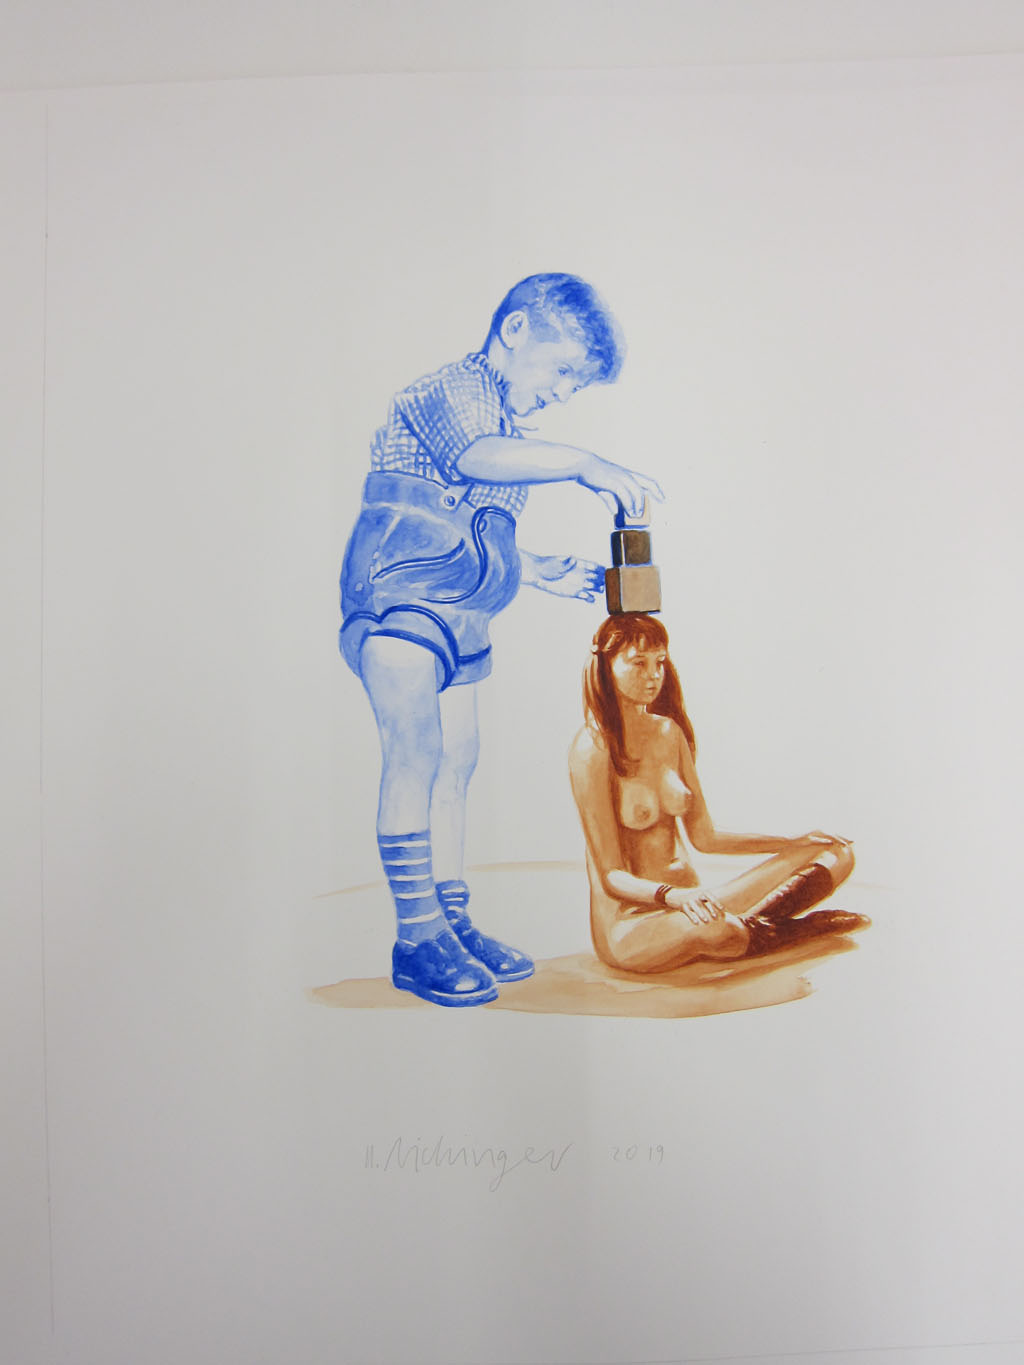 ohne Titel - Watercolor -  2019 - 55 x 45 cm - Unikat copies